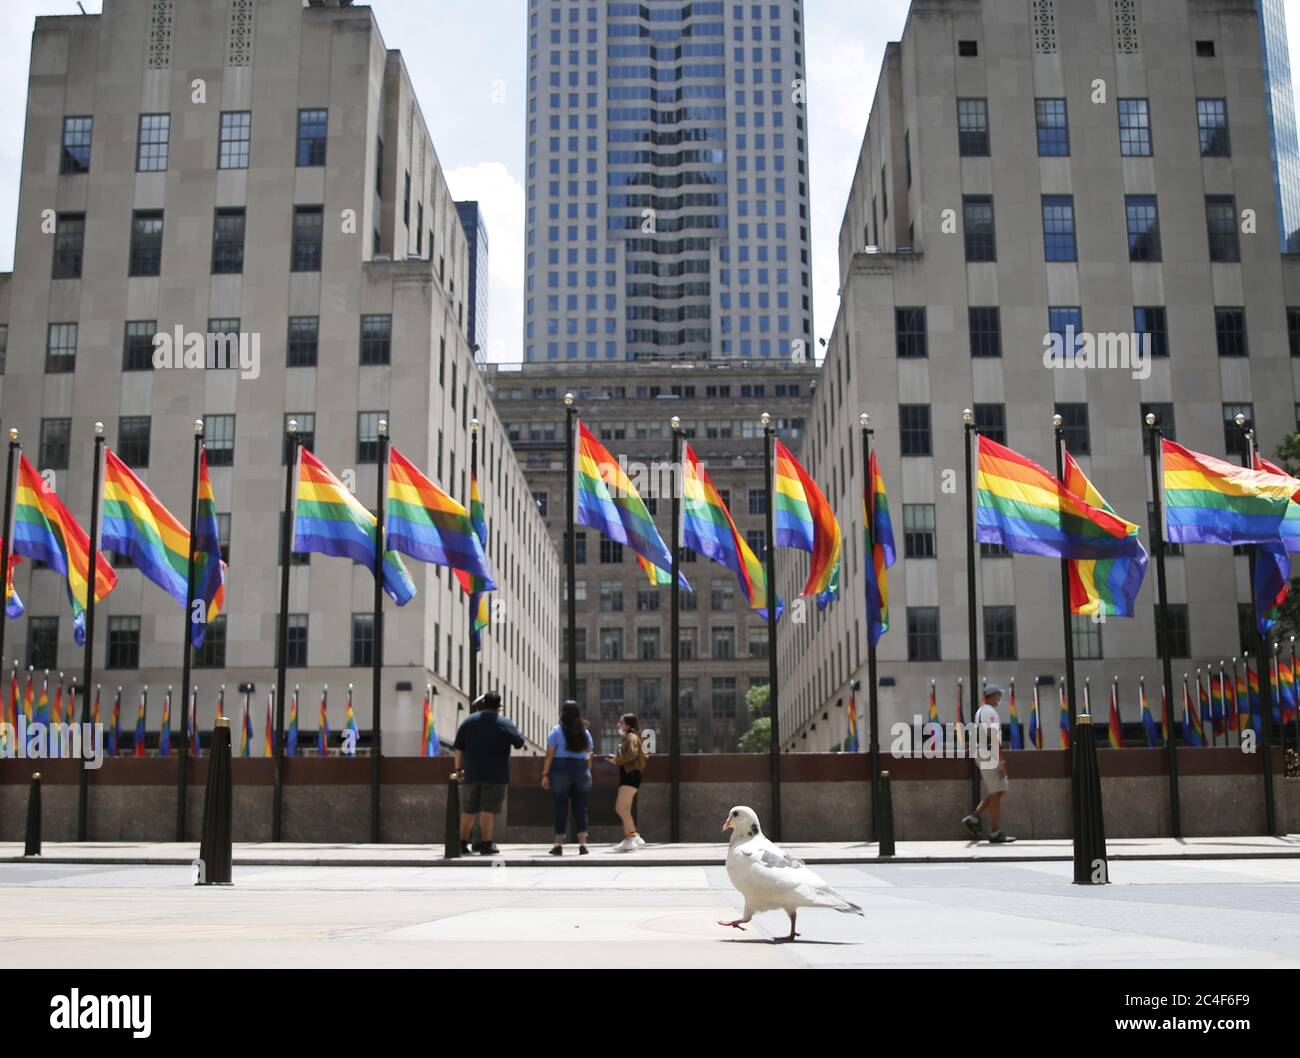 New York, Stati Uniti. 26 Giugno 2020. Le bandiere arcobaleno circondano il Rink al Rockefeller Center, che rimane vuoto da quasi tutti i pedoni venerdì 26 giugno 2020. Più di 100 bandiere colorate di arcobaleno si allineano al Rockefeller Center e rimarranno in vigore fino a domenica 28 giugno, fino al New York Pride March. New York City è entrata nella fase 2 di un piano di riapertura in quattro parti lunedì dopo essere stata chiusa per 3 mesi a causa del COVID-19. Foto di John Angelillo/UPI Credit: UPI/Alamy Live News Foto Stock